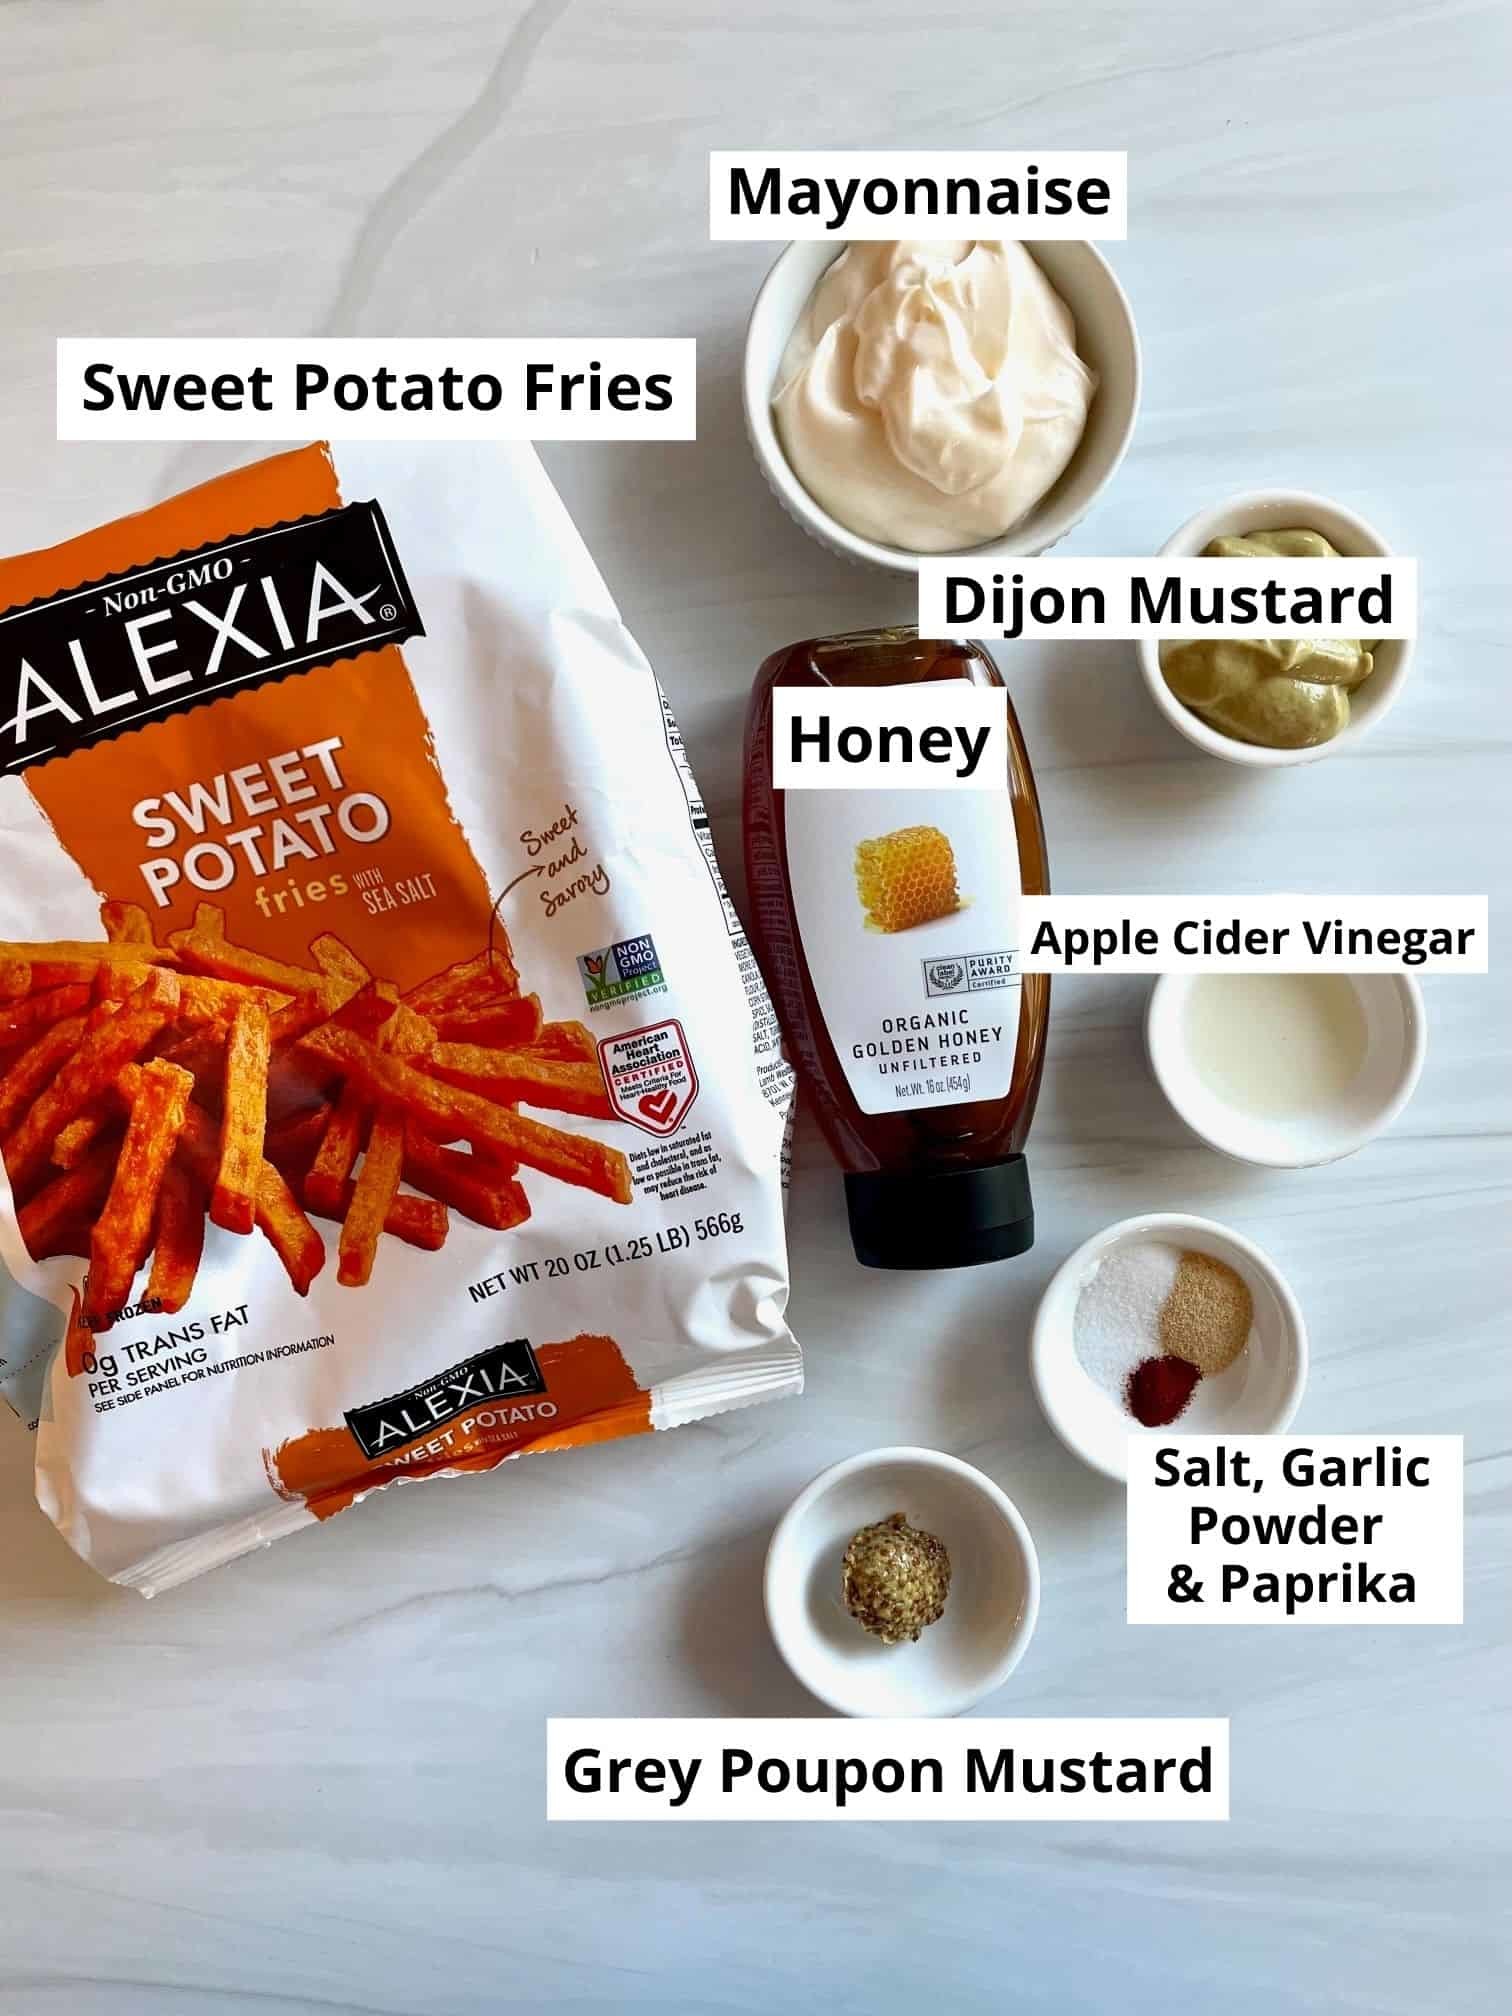 alexia sweet potato fries air fryer